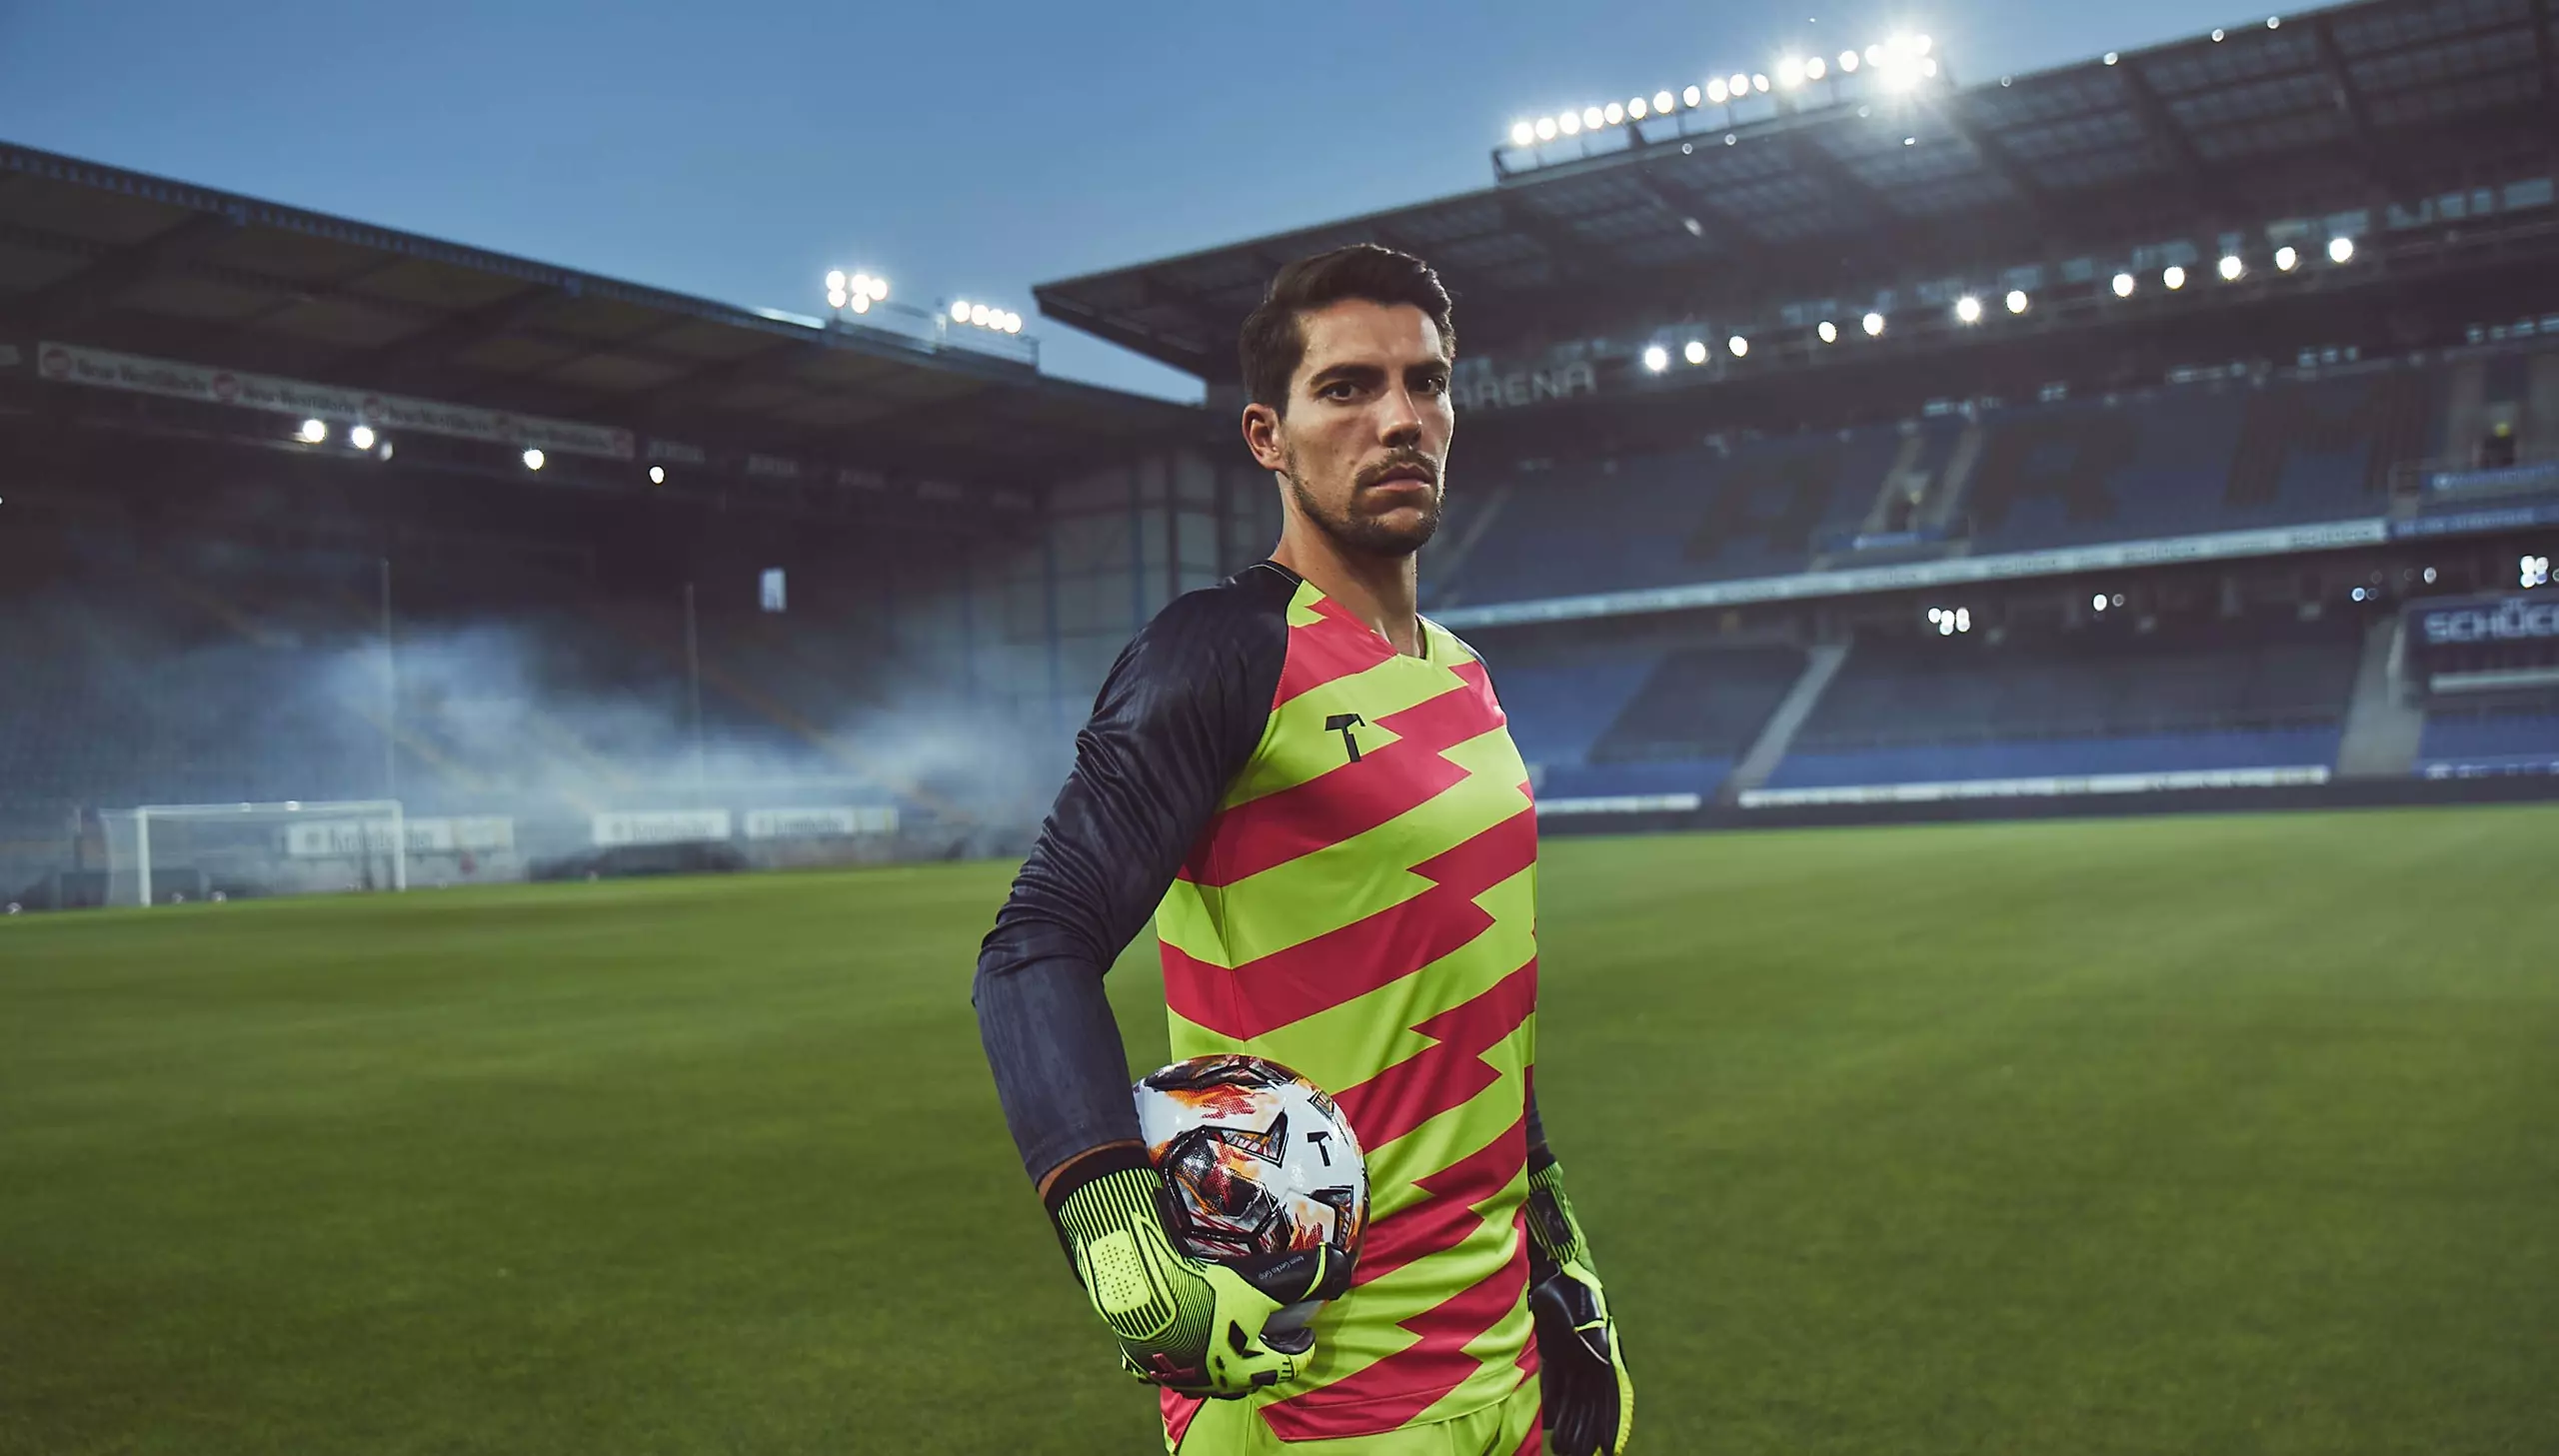 3_Manchester_City_goalkeeper_Stefan_Ortega_Titan_gloves_Landscape